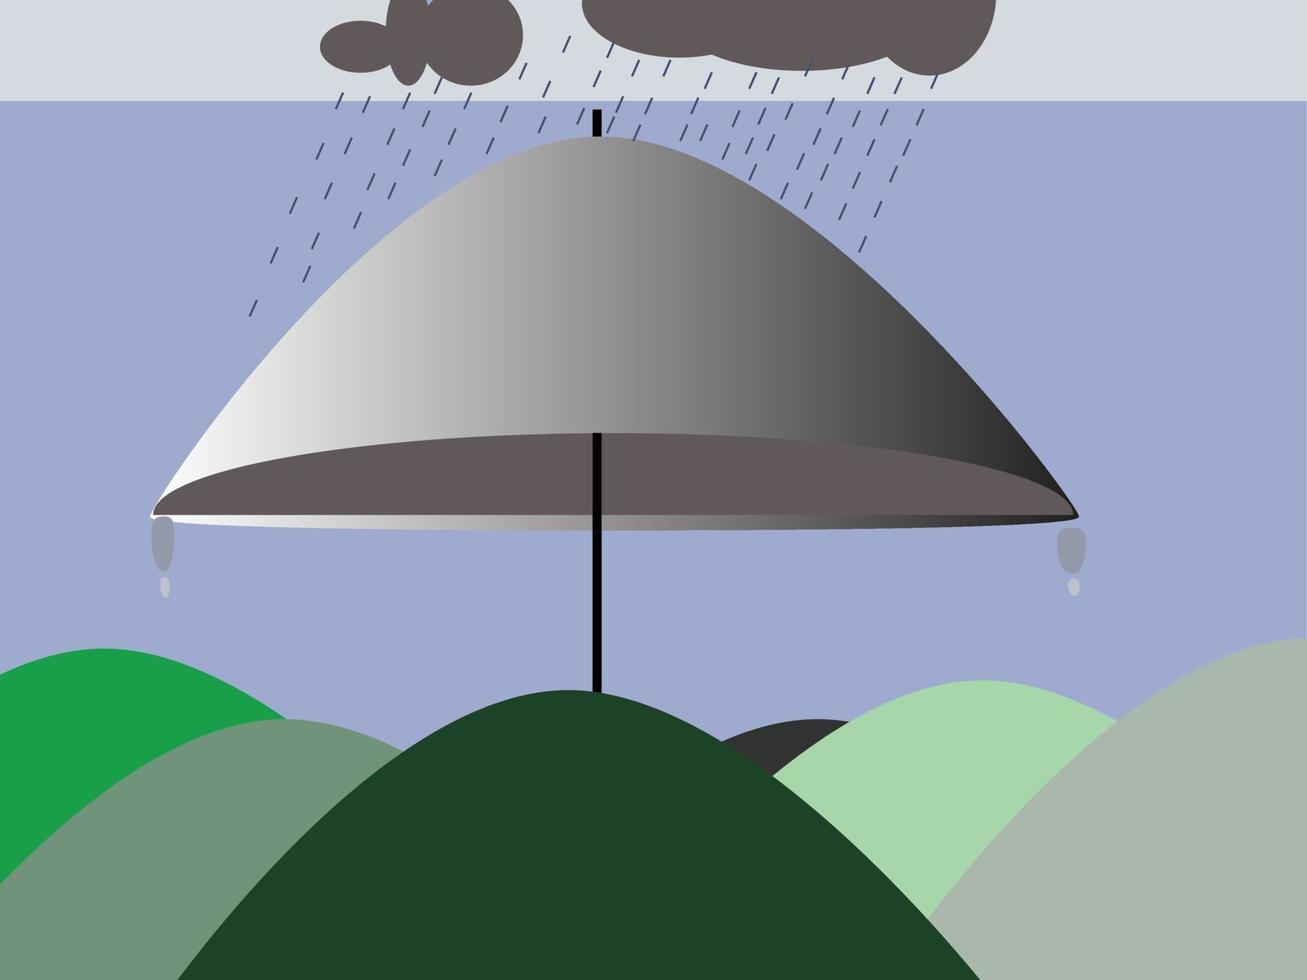 rain with umbrella icon image vector